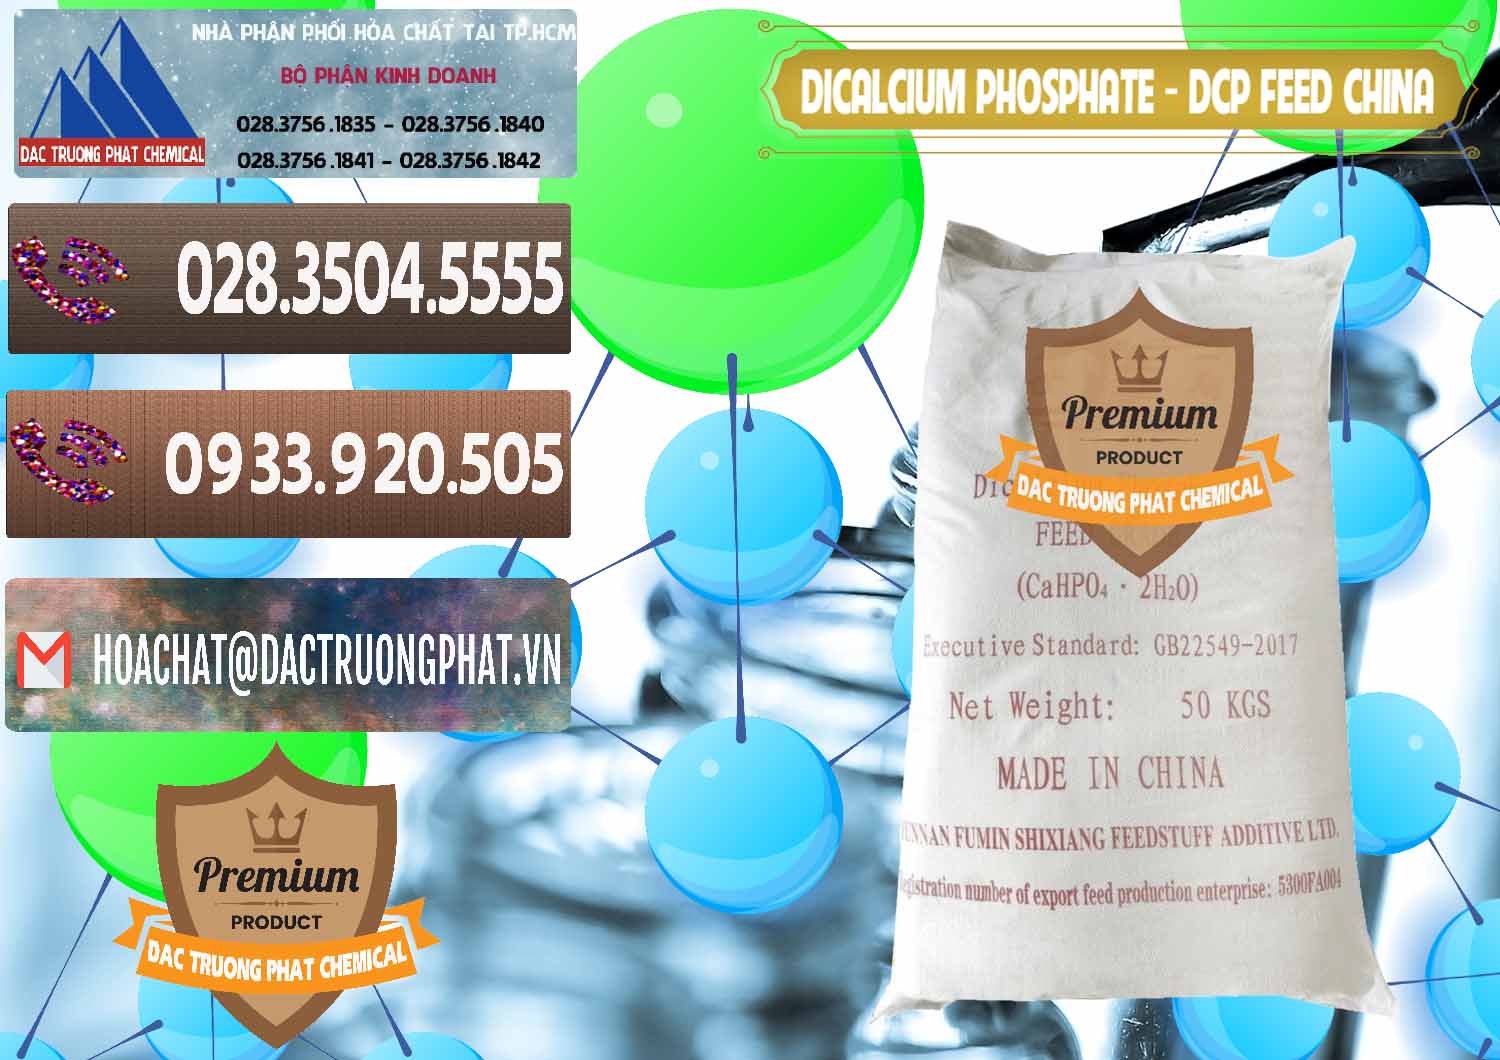 Công ty bán và cung ứng Dicalcium Phosphate - DCP Feed Grade Trung Quốc China - 0296 - Công ty chuyên kinh doanh - cung cấp hóa chất tại TP.HCM - hoachatviet.net